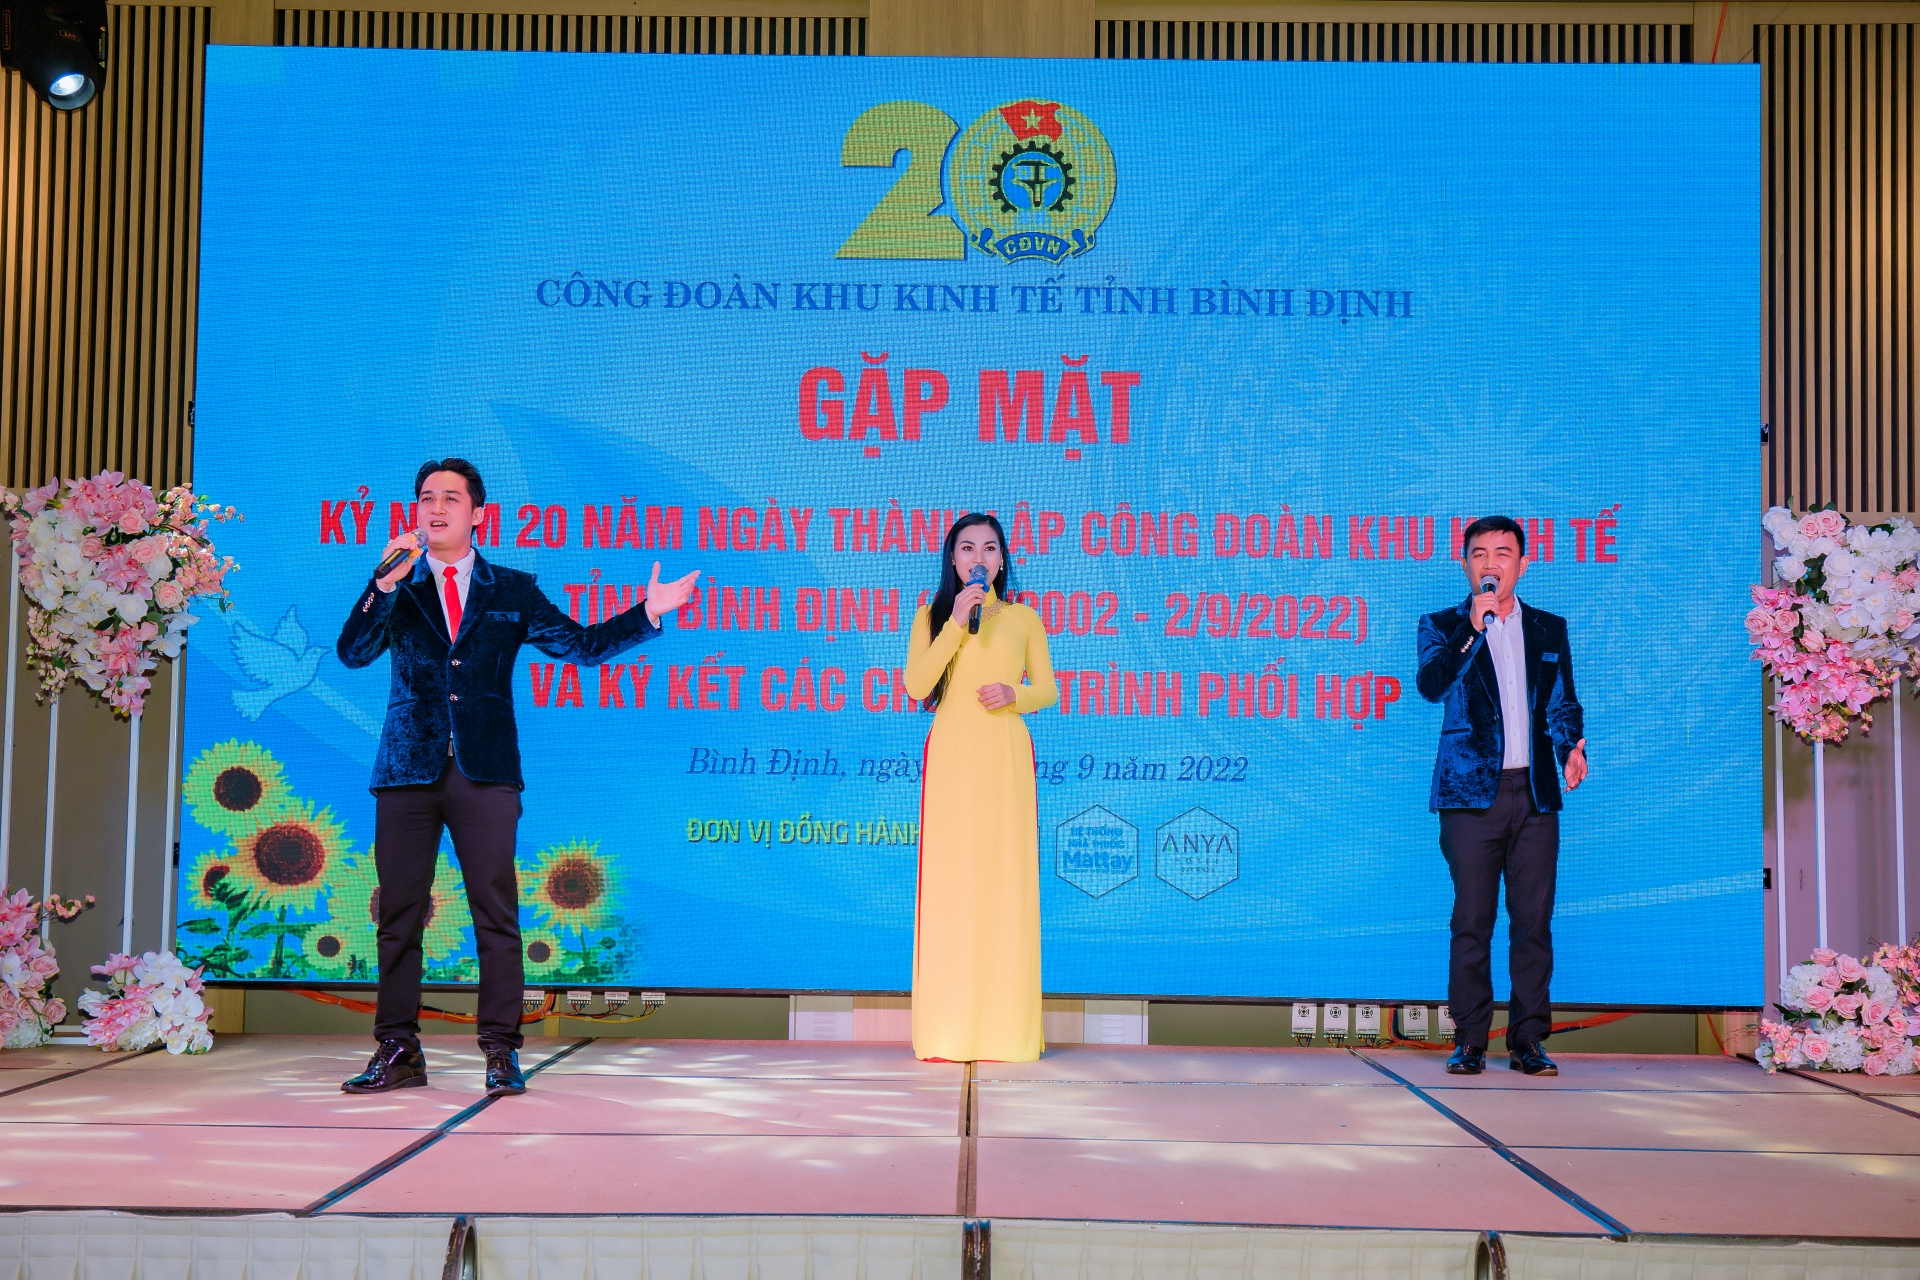 Công đoàn KKT tỉnh Bình Định: Dấu ấn 20 năm thành lập